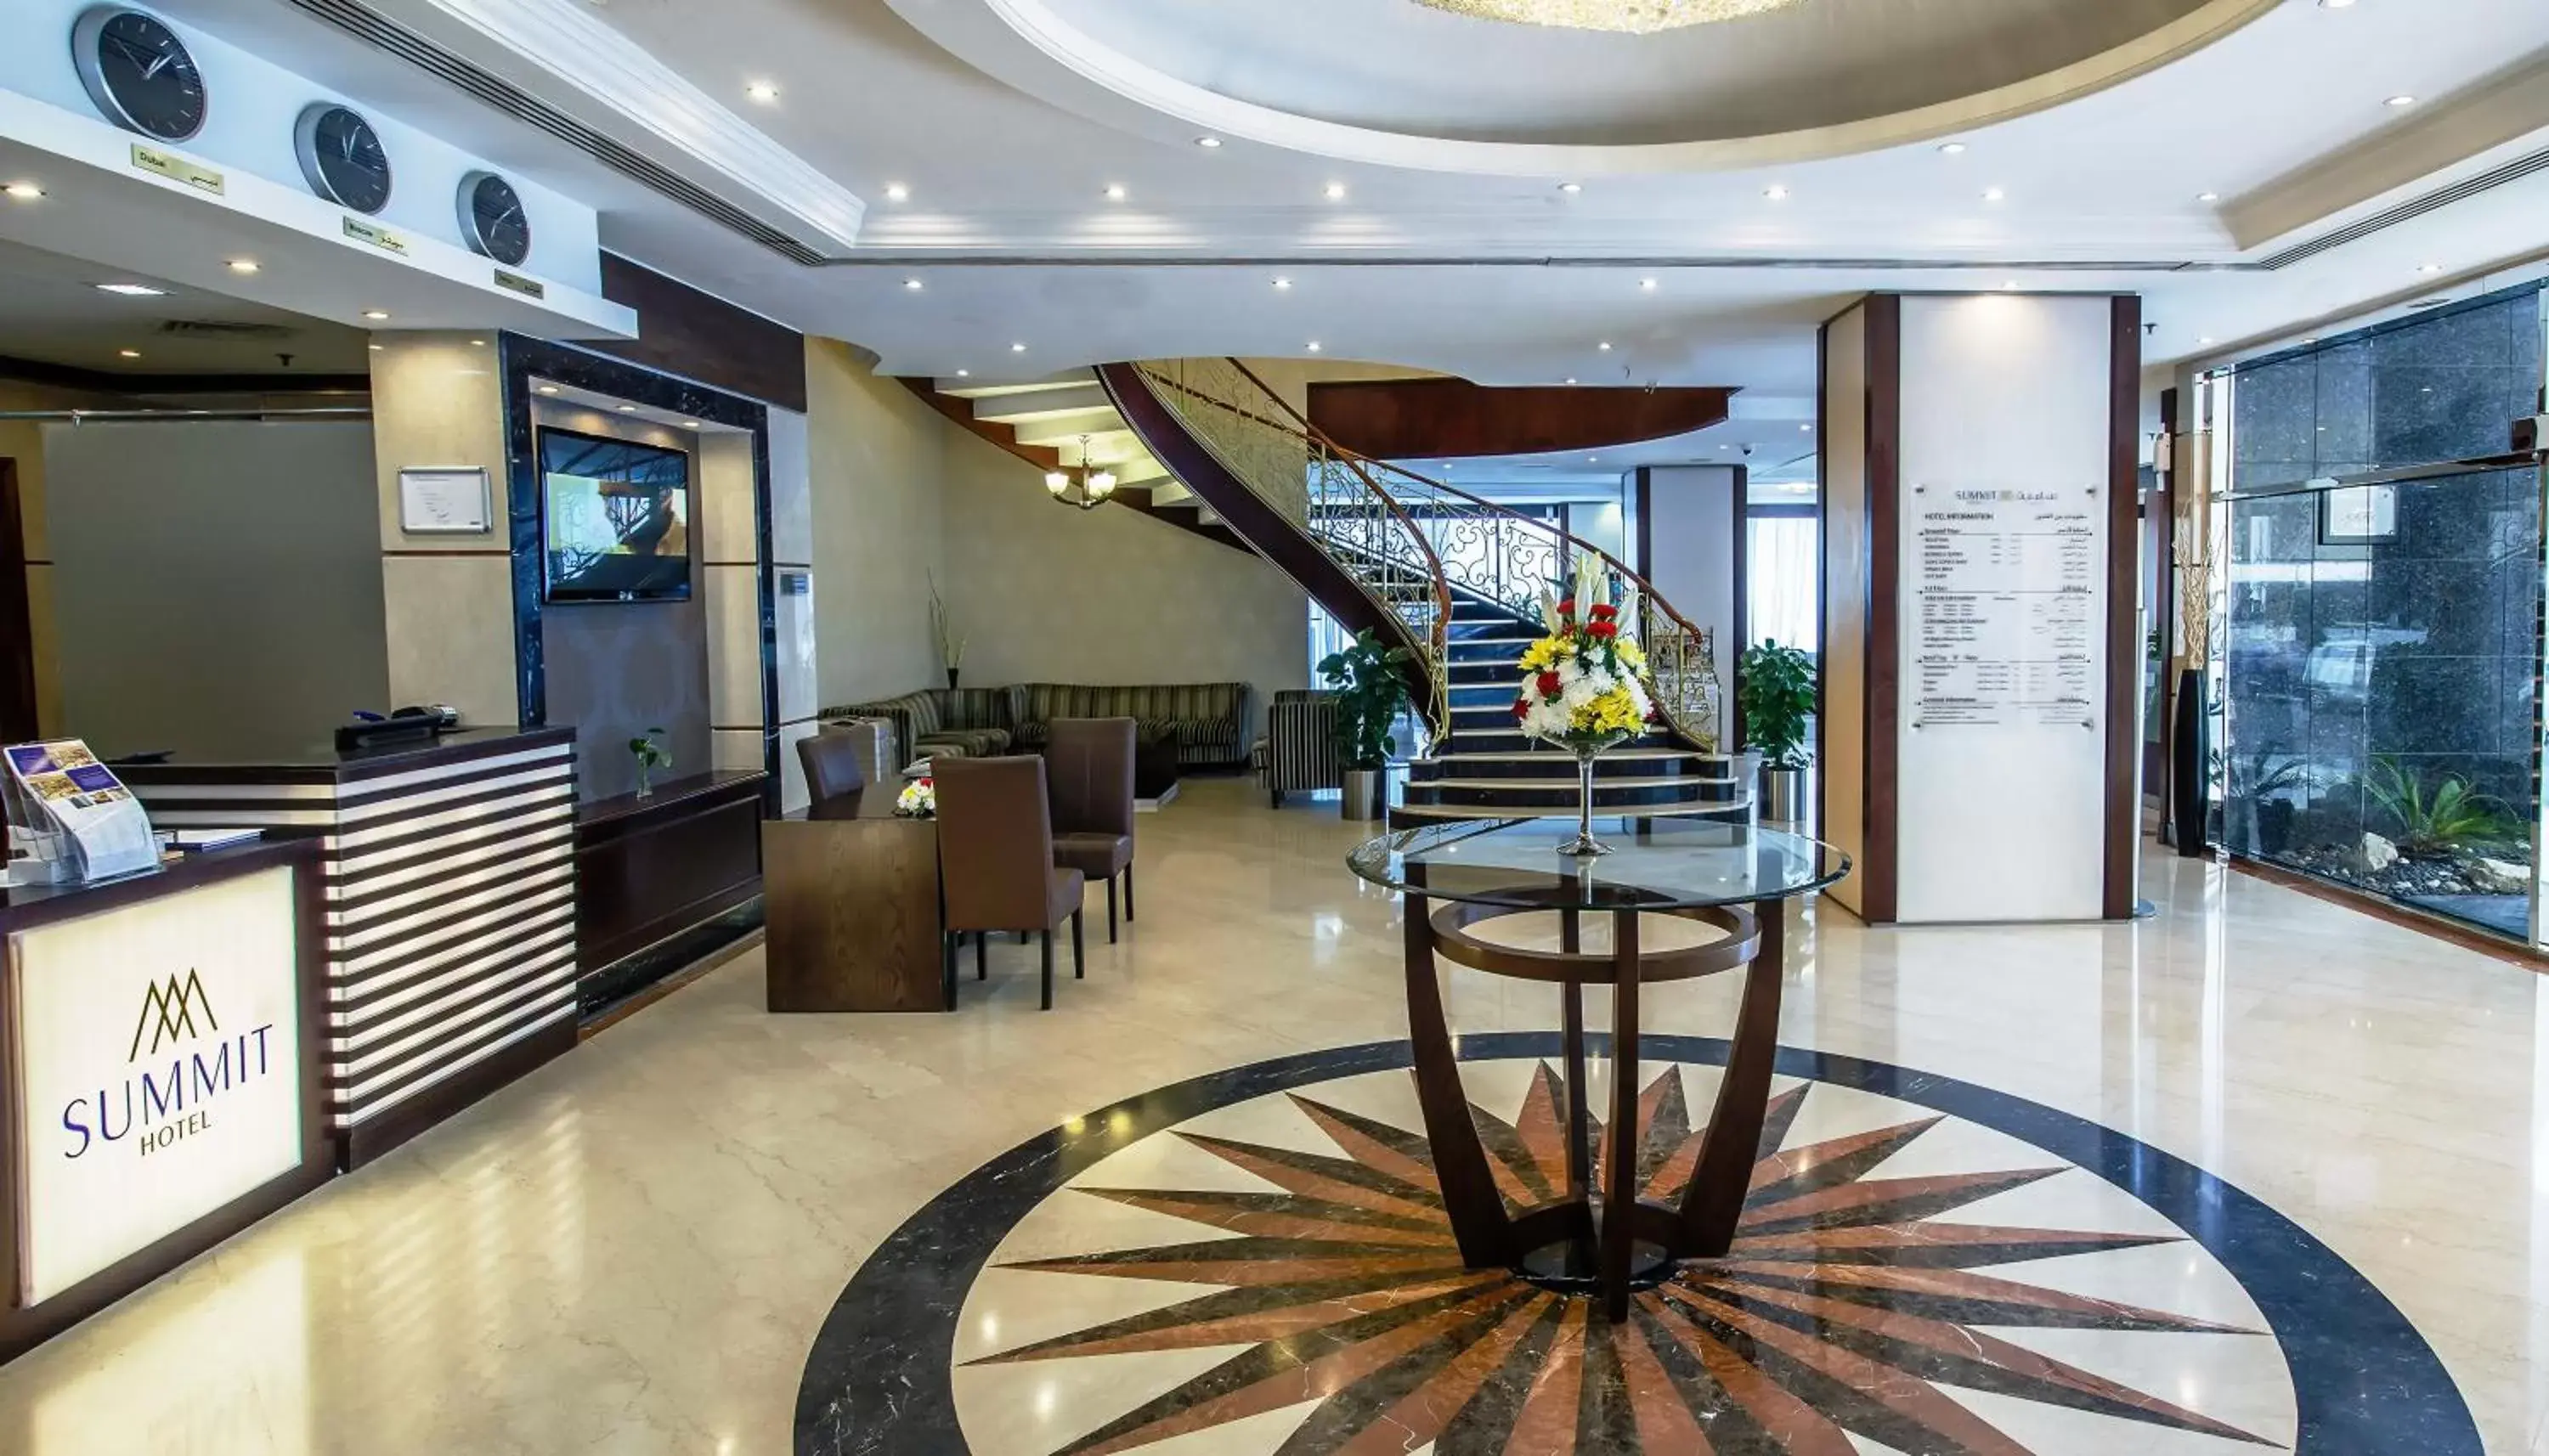 Lobby or reception in Landmark Summit Hotel